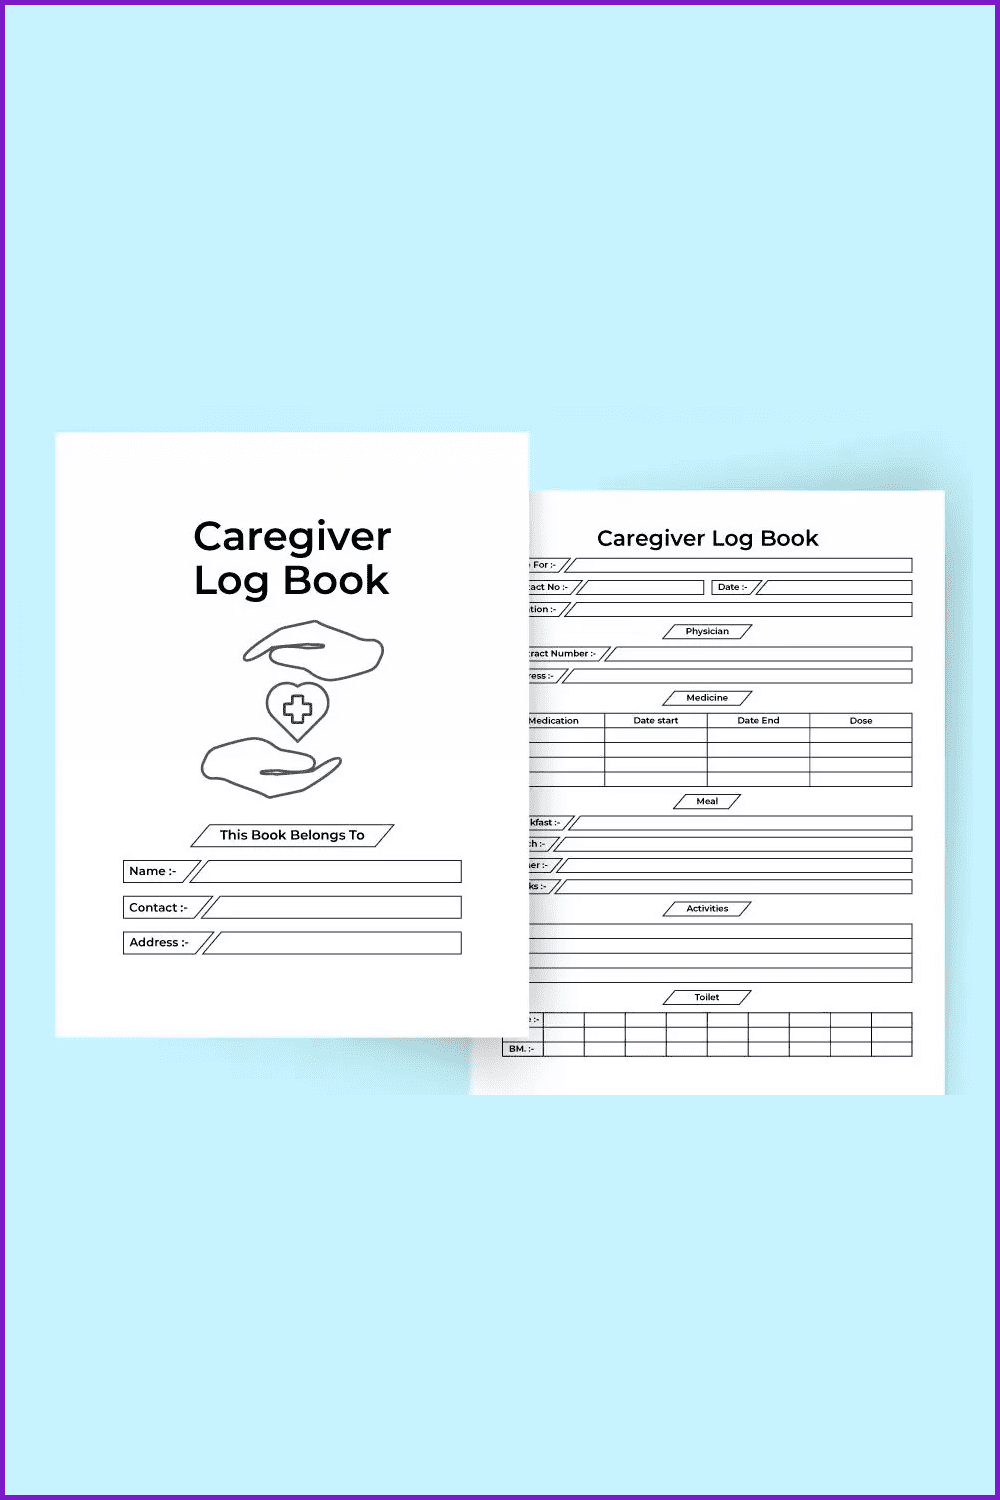 Caregiver Log Book.